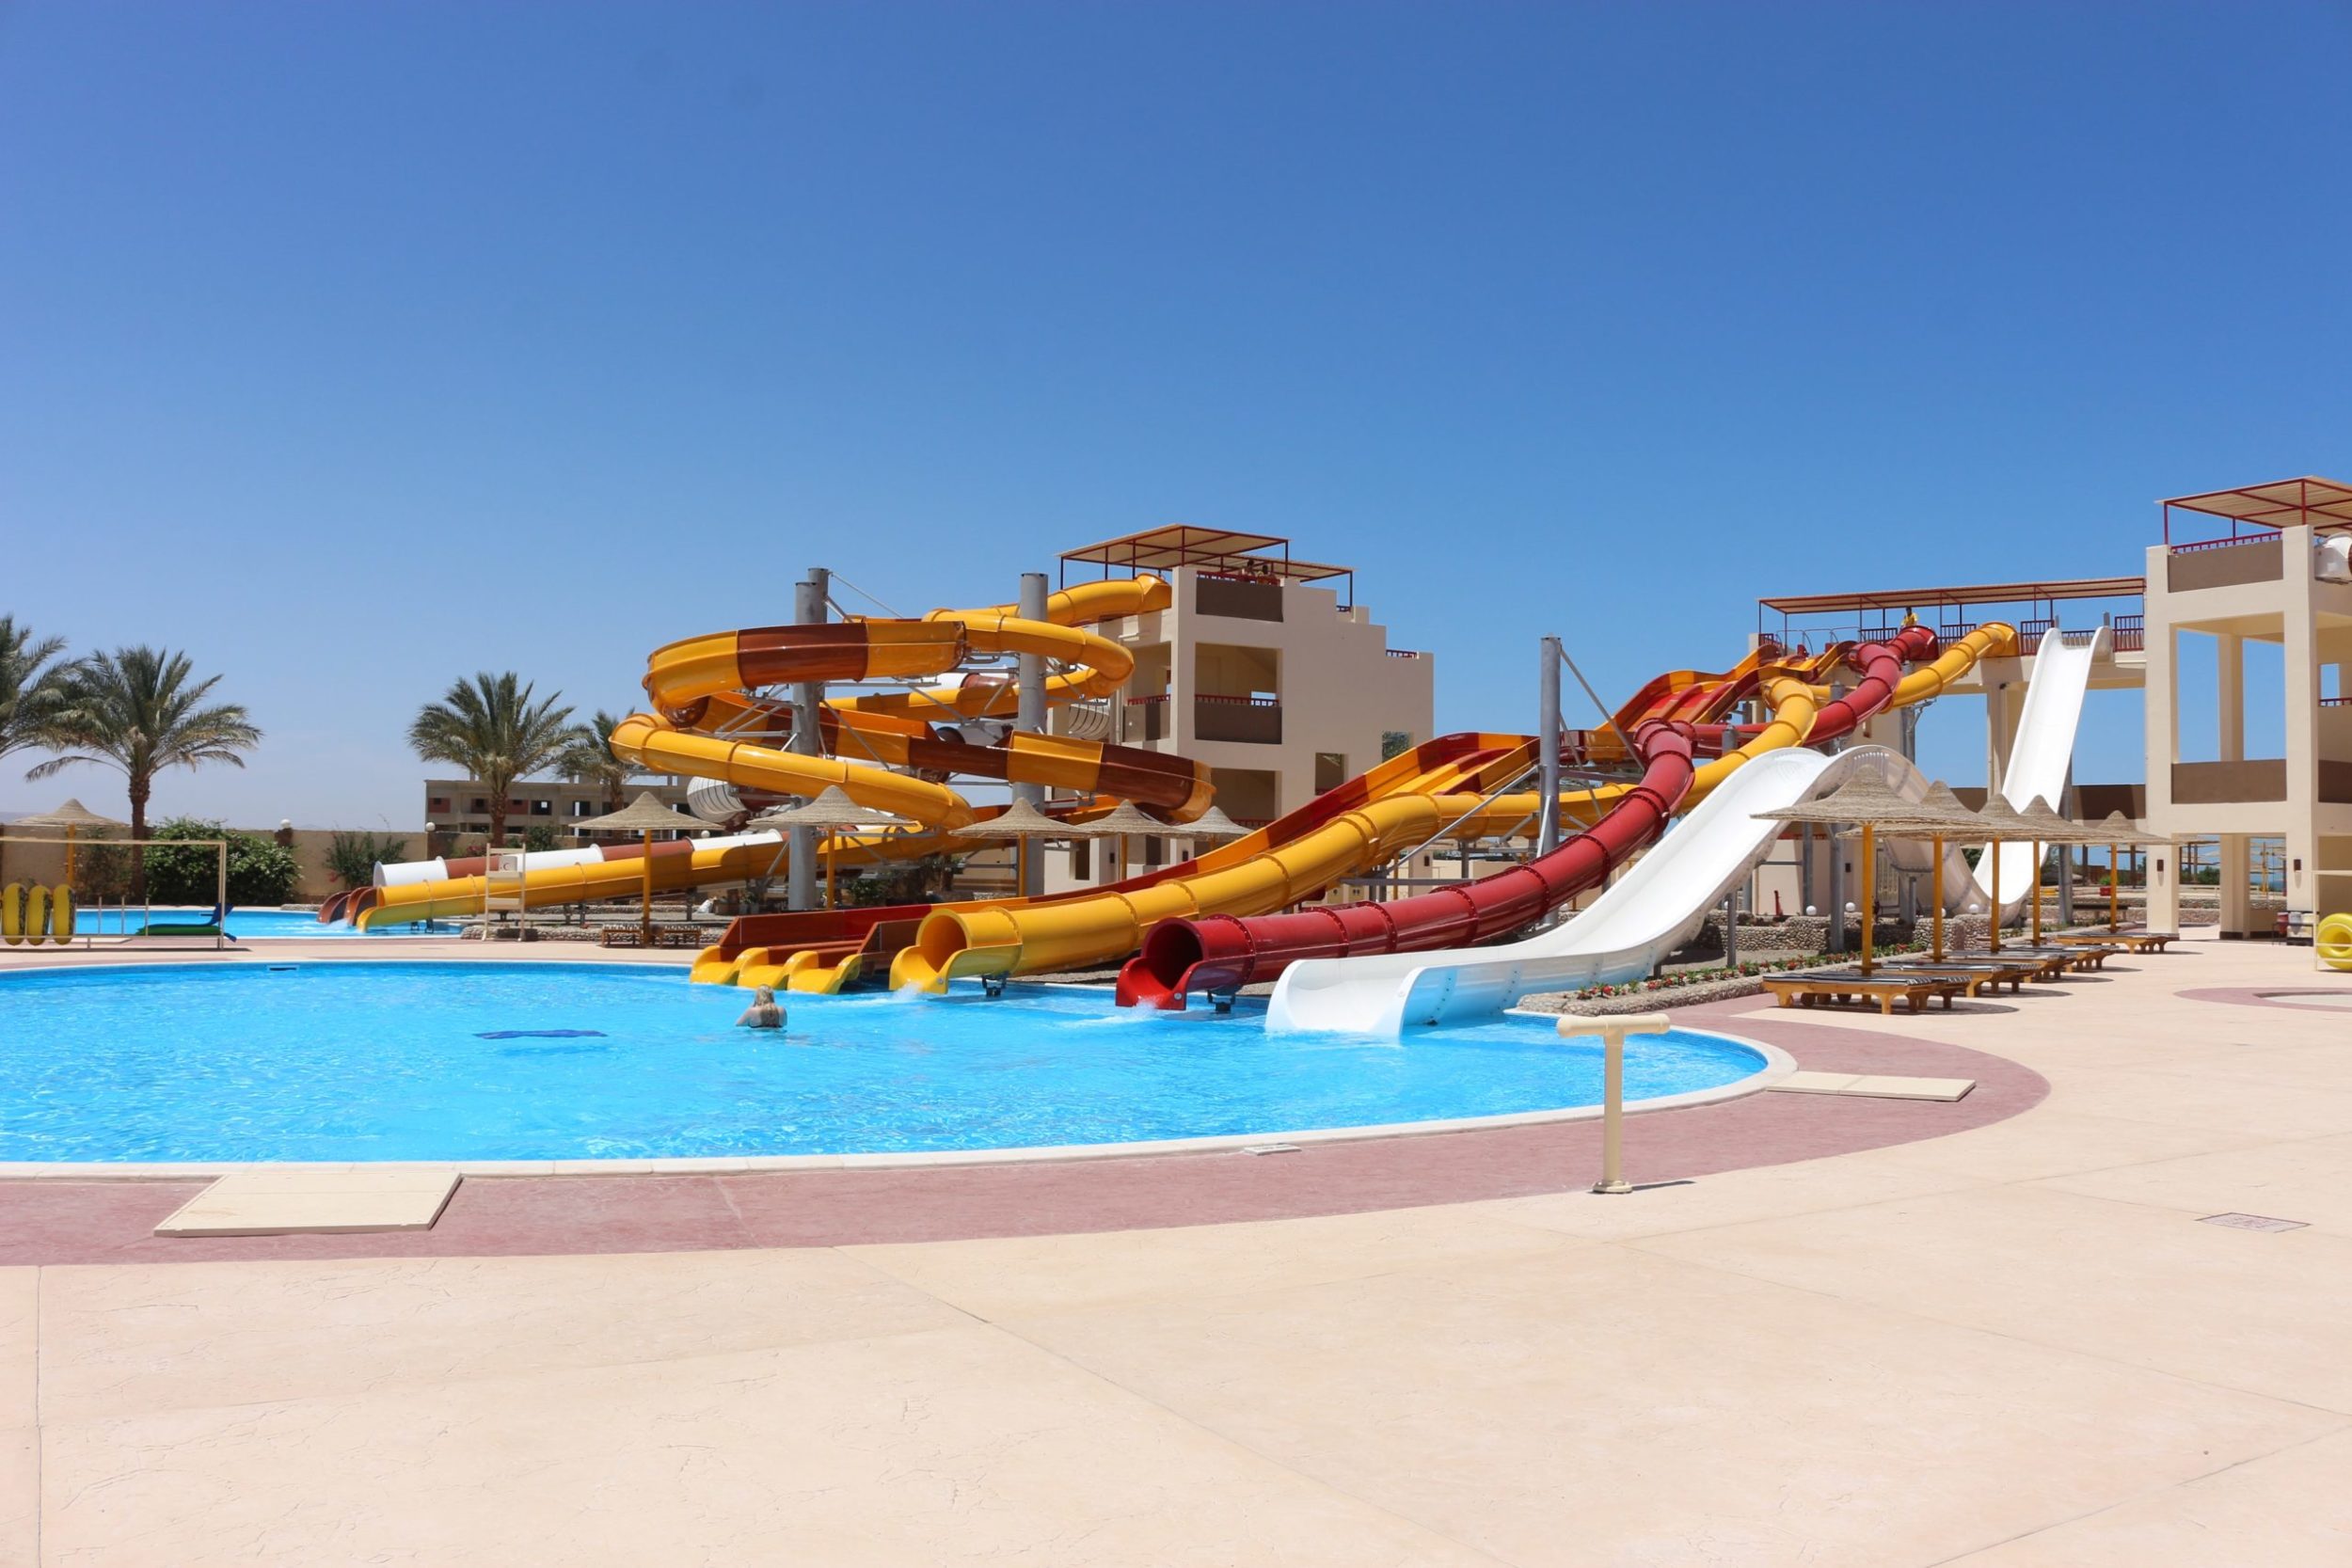 اقوي عروض فندق نوبيا اكوا بيتش ريزورت الغردقة بالانتقالات - افضل عروض فنادق الغردقة | Nubia Beach Resort & Aqua Park